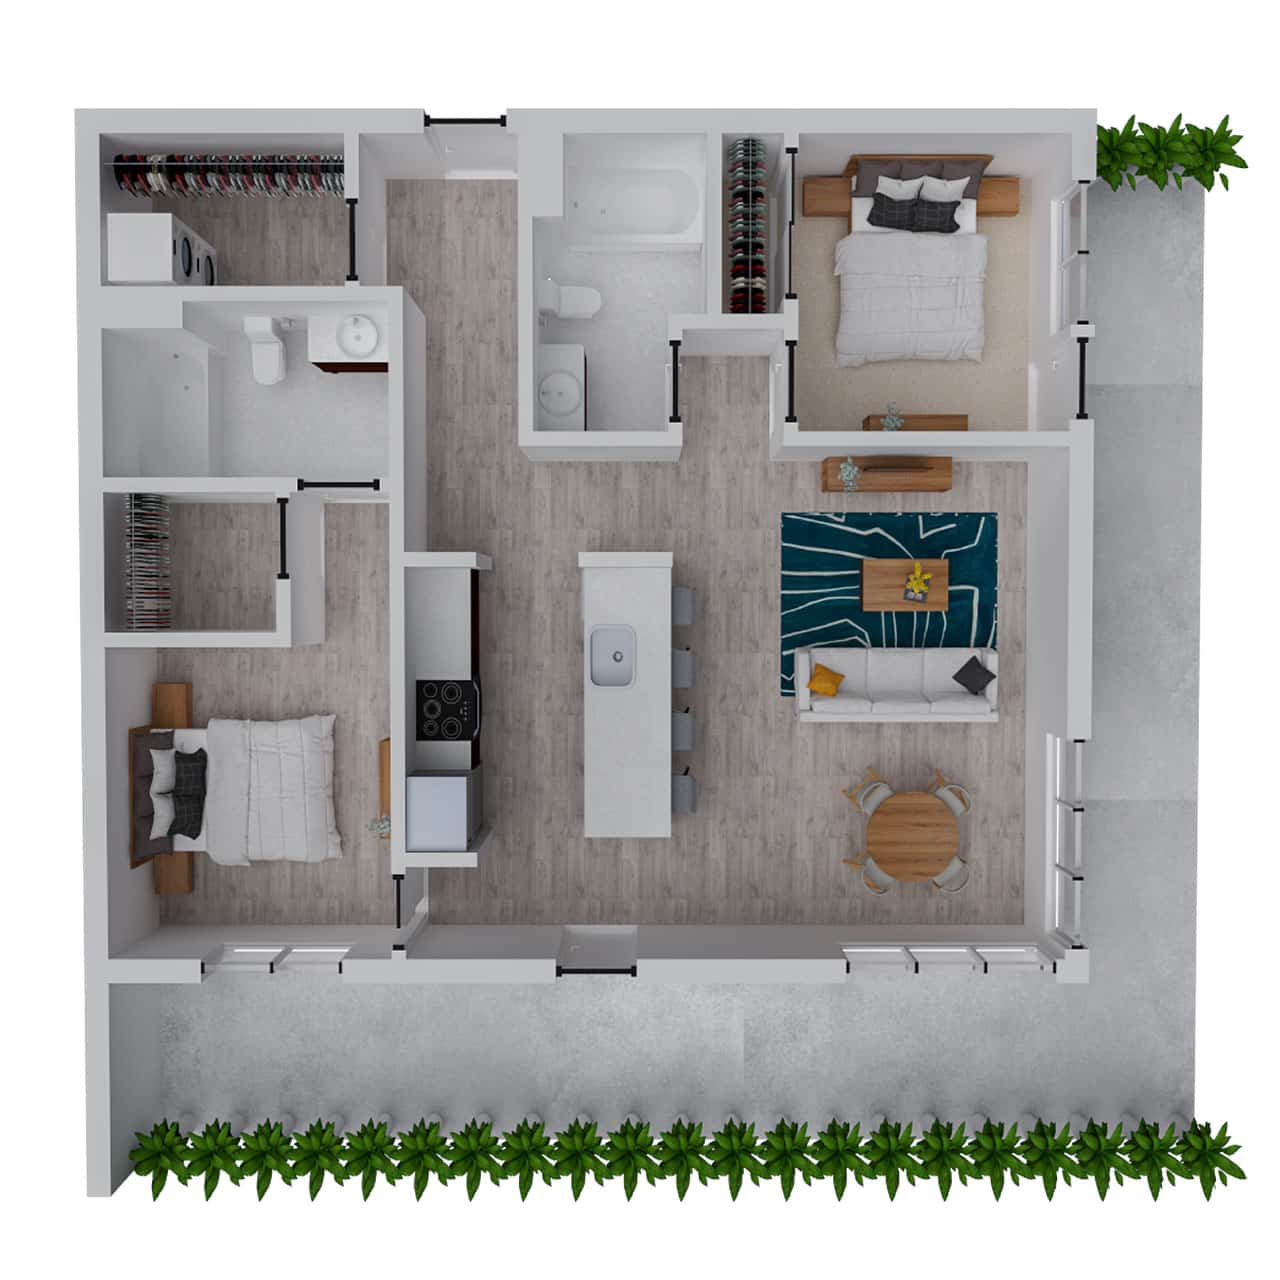 Attwell, B5 floor plan, 2 bedroom, 2 bath.